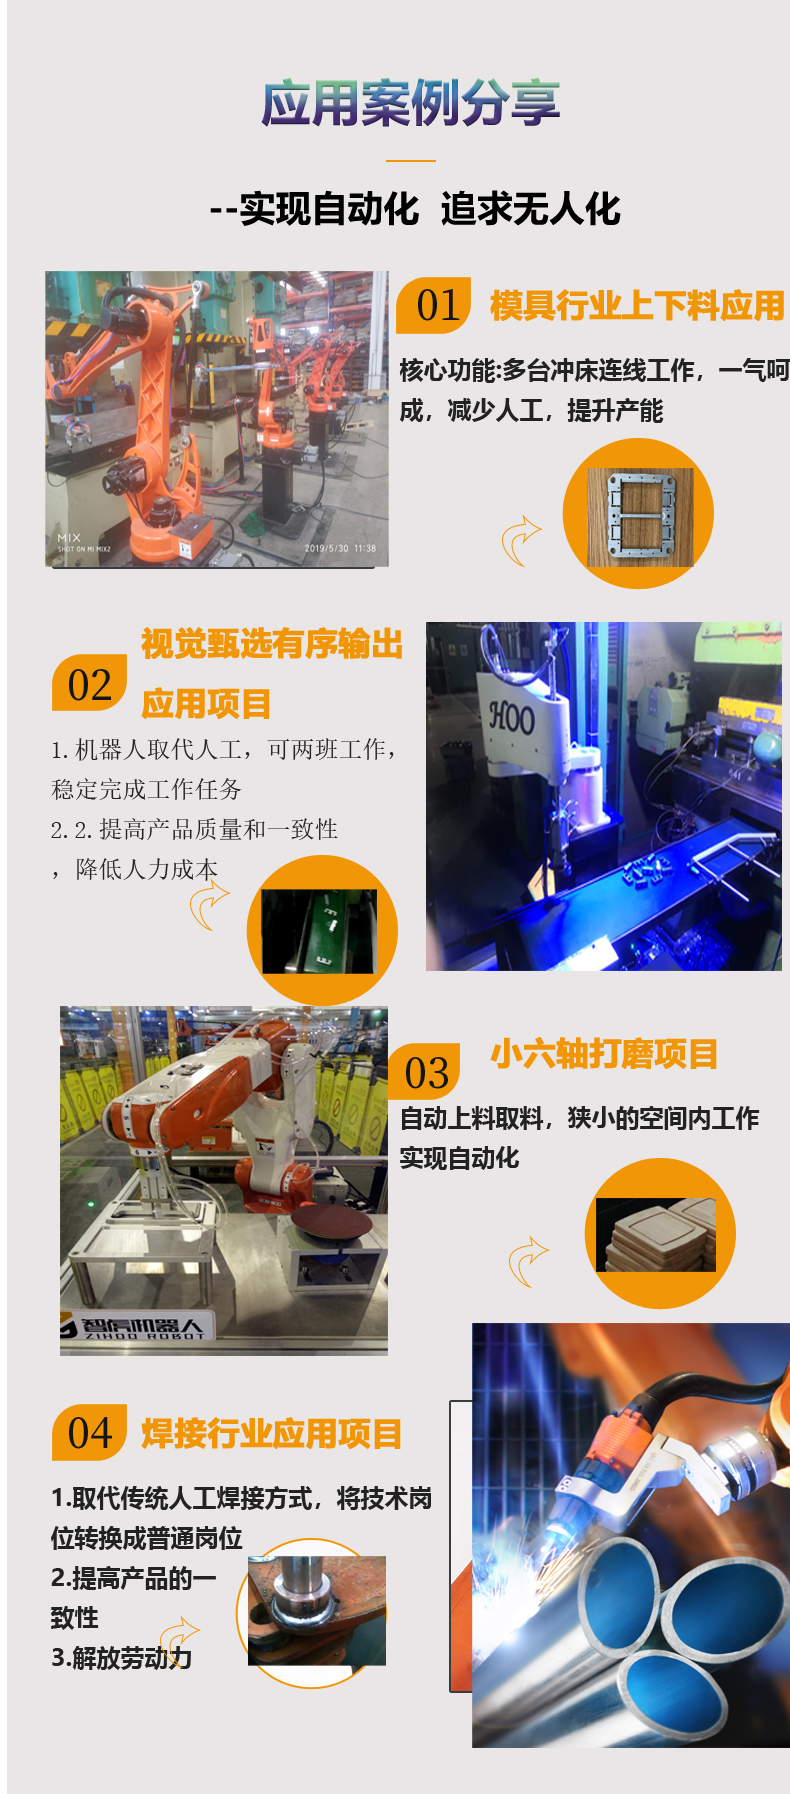 上海4轴冲压机器人厂家